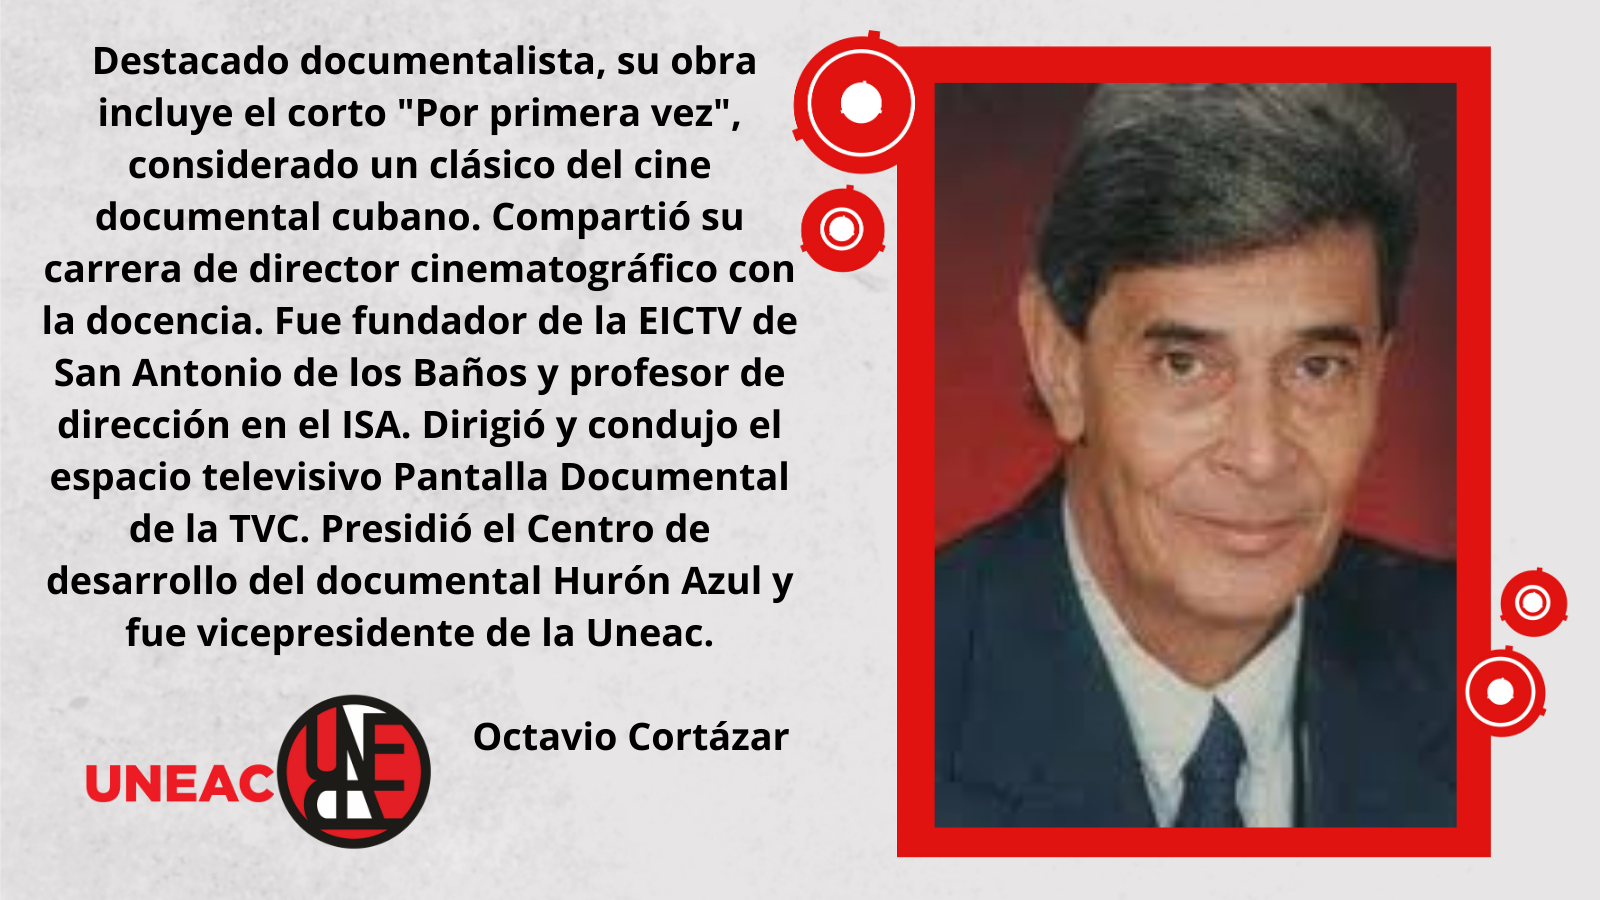 Octavio Cortázar Uneac